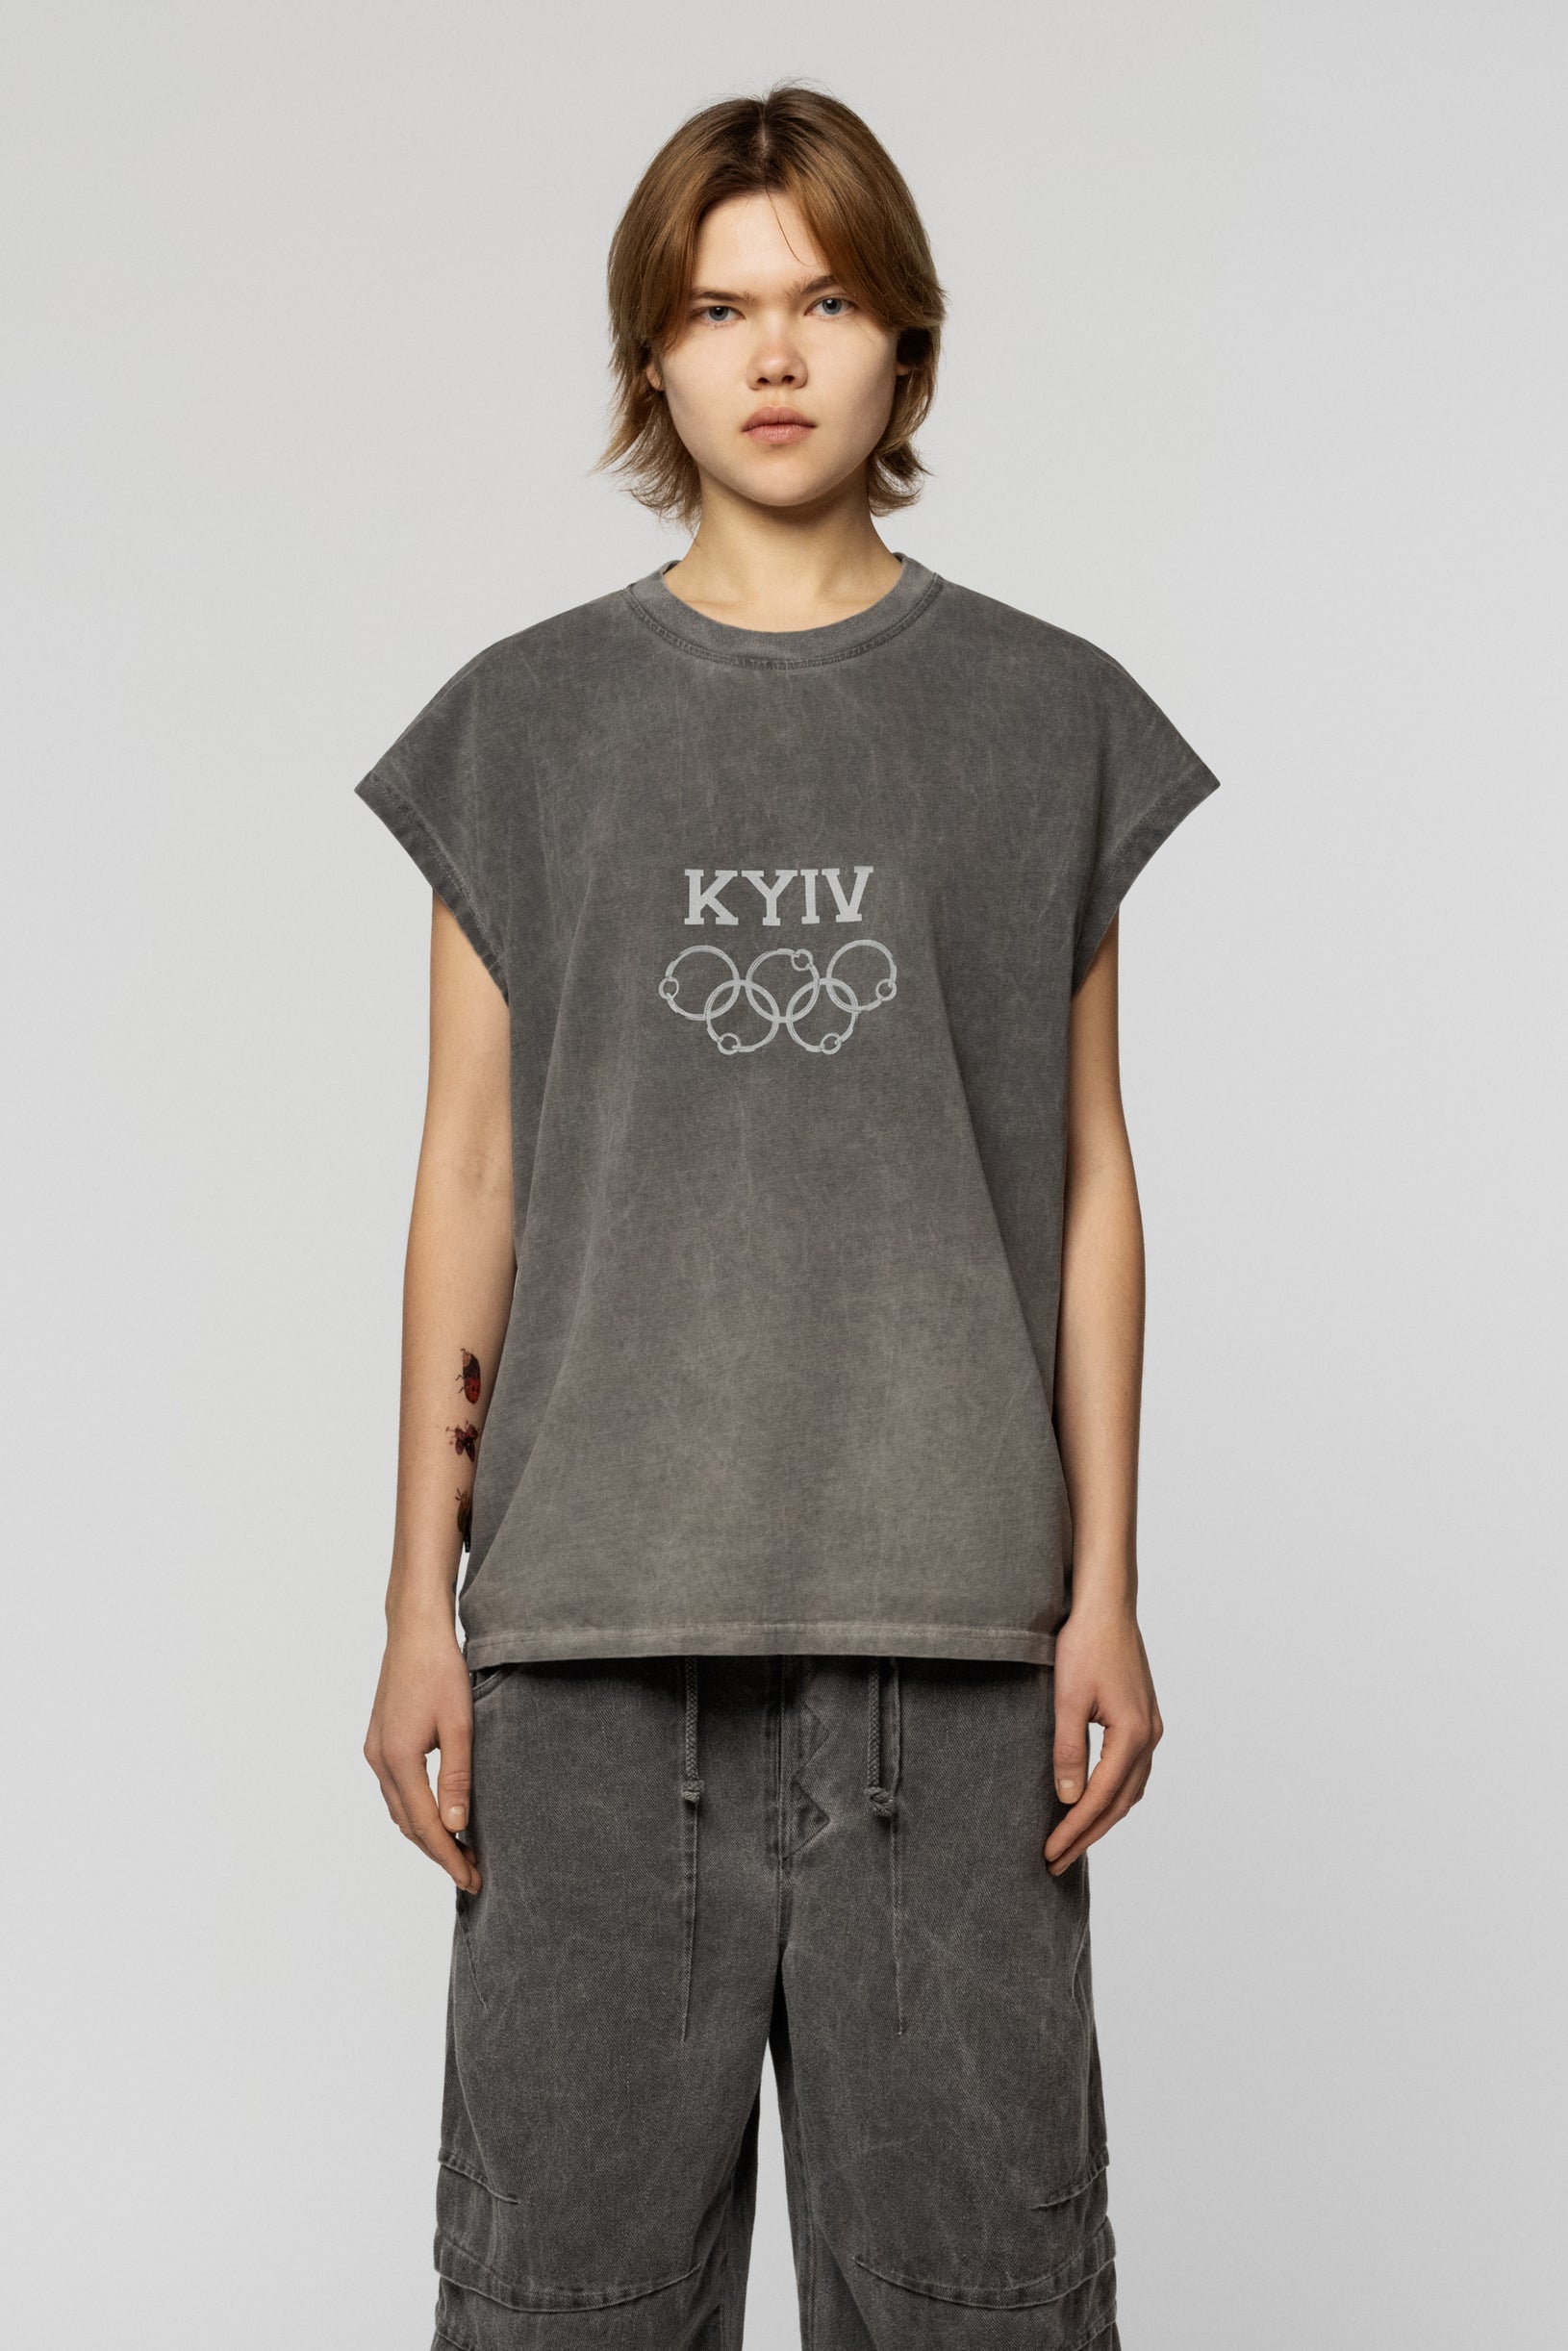 Kyiv Olympics Faded Sleeveless T-shirt Grey